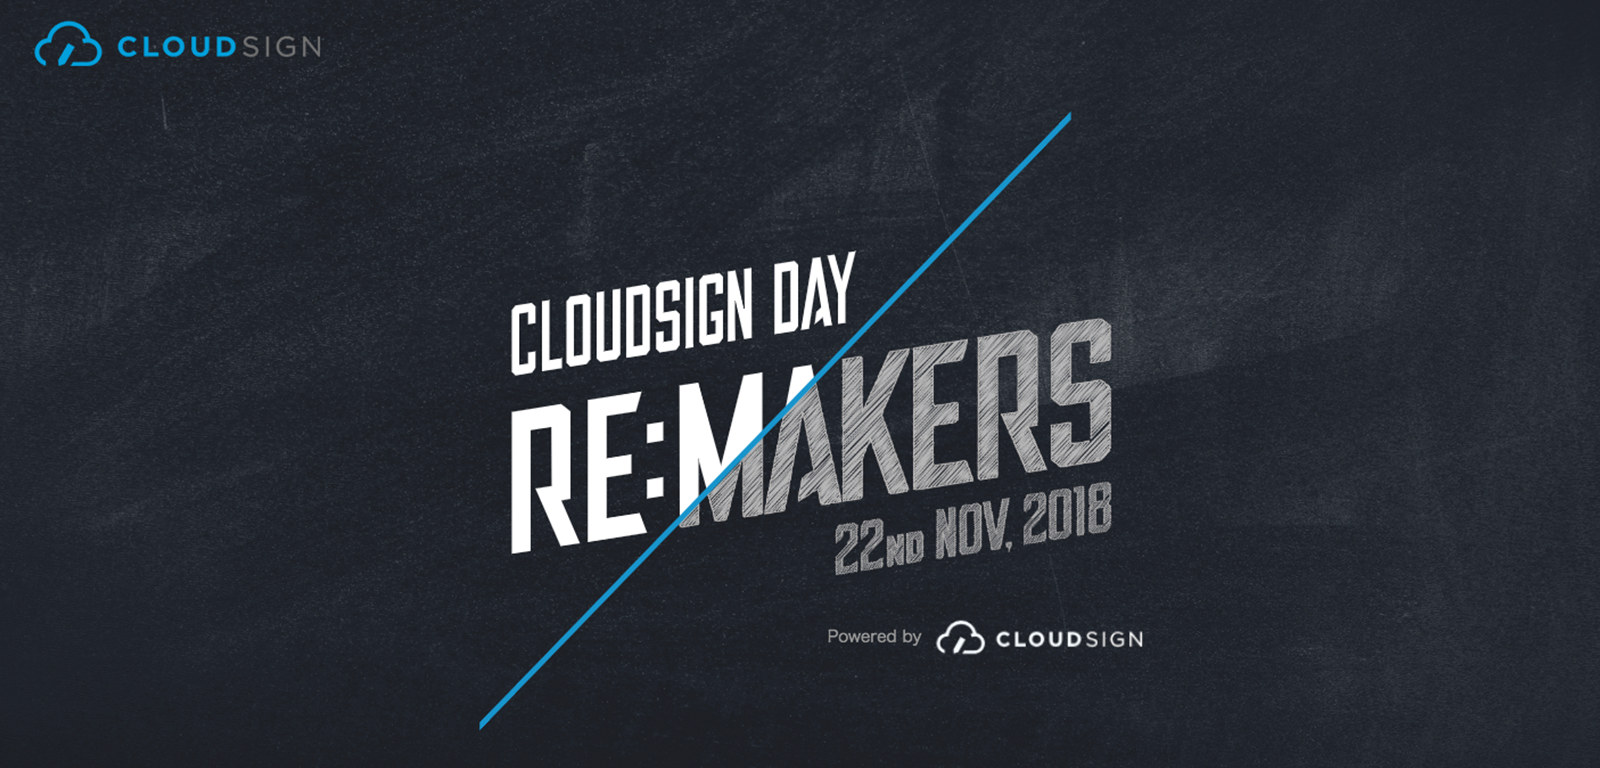 クラウドサイン3周年イベント「CLOUDSIGN DAY 2018 — RE:MAKERS」を開催